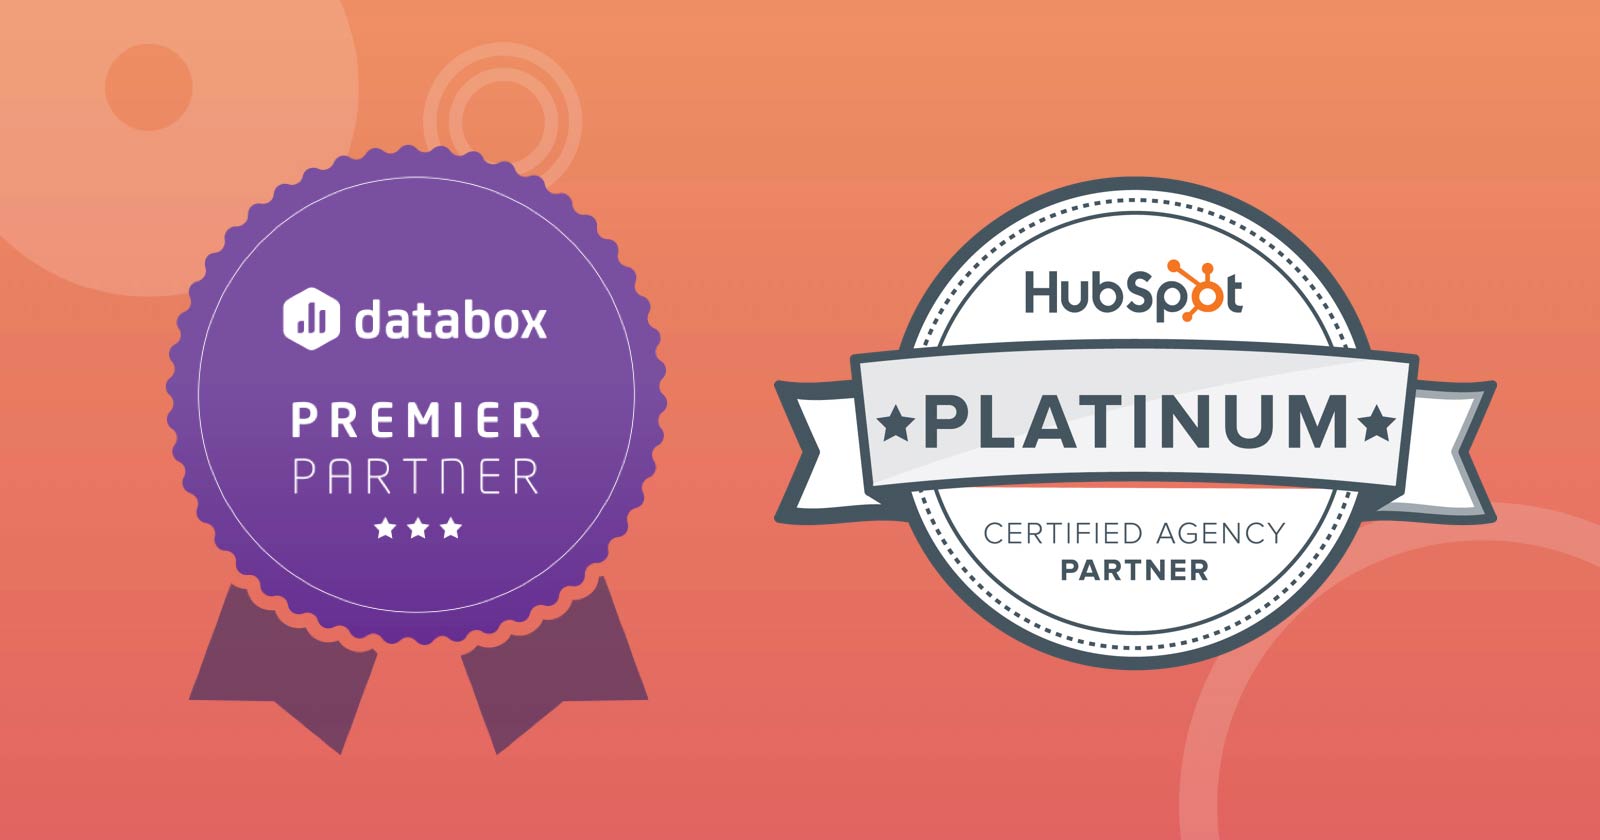 ML Becomes a HubSpot Certified Platinum Partner & Databox Premier Partner